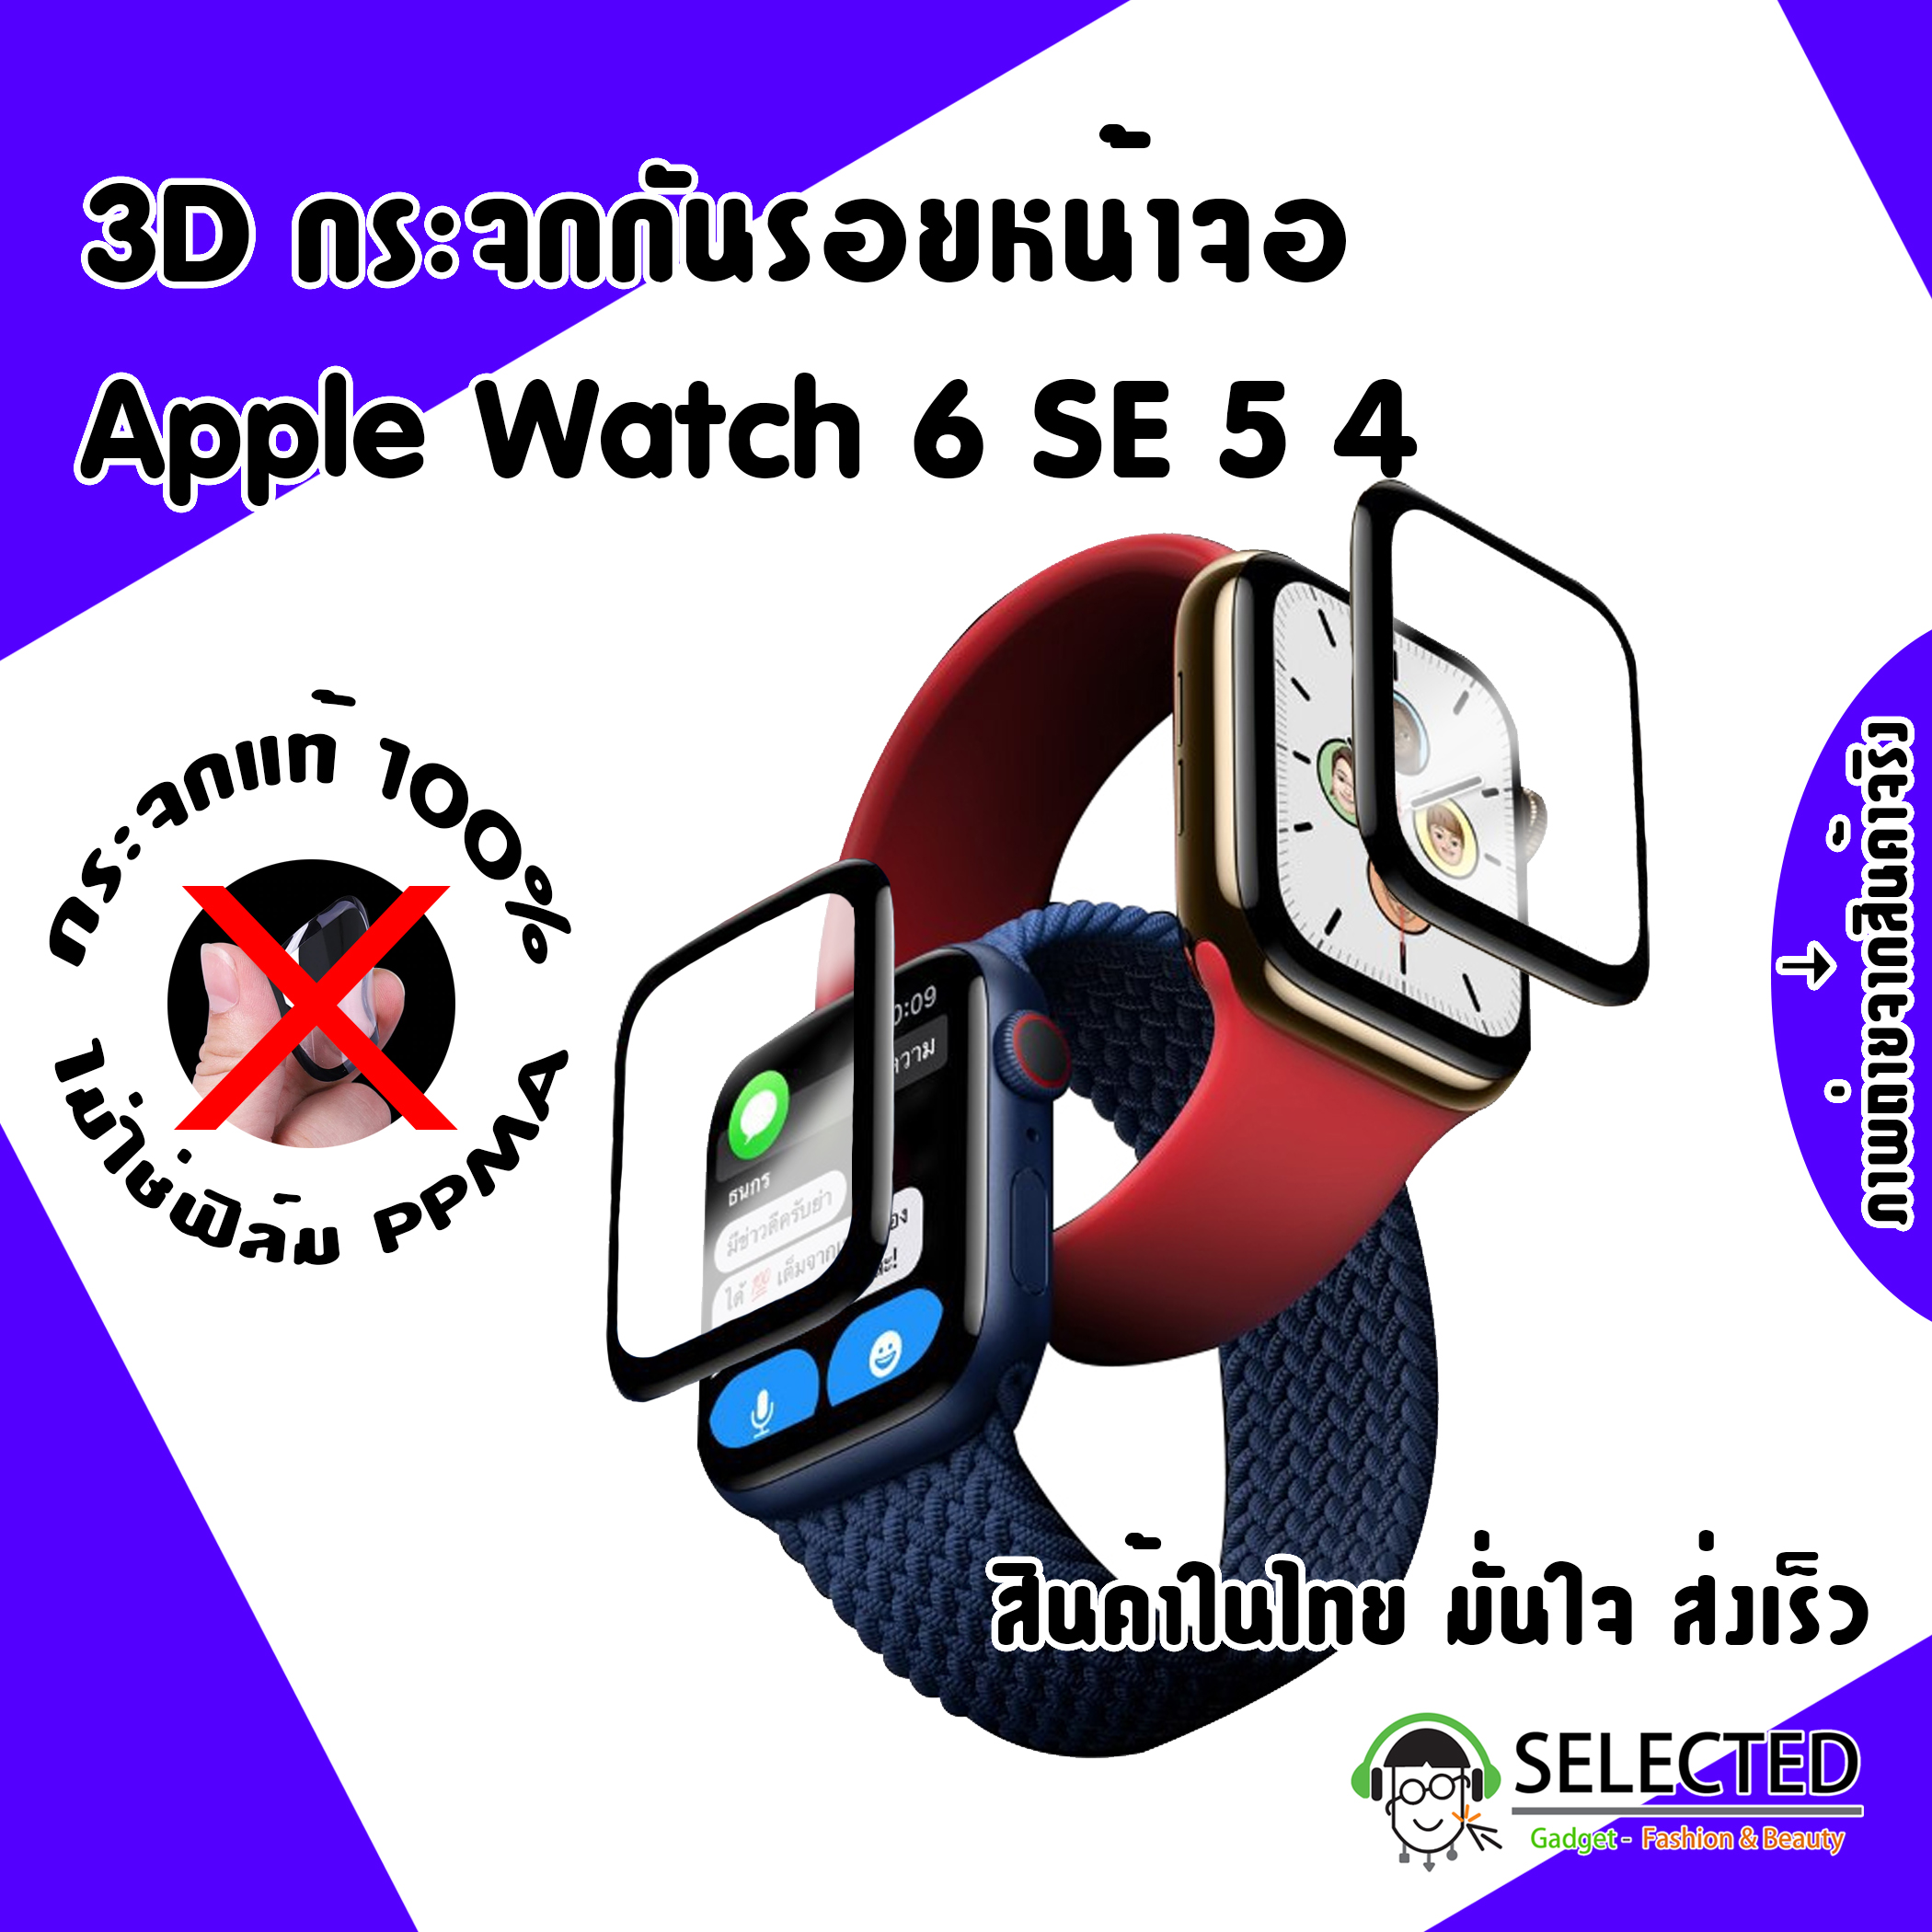 [ส่งเร็ว สต๊อกไทย] กระจกกันรอย Apple watch 3D 6 SE 5 4 ฟิล์ม หน้าจอ Glass Screen Protector Applewatch ฟิล์มกันรอย กระจก